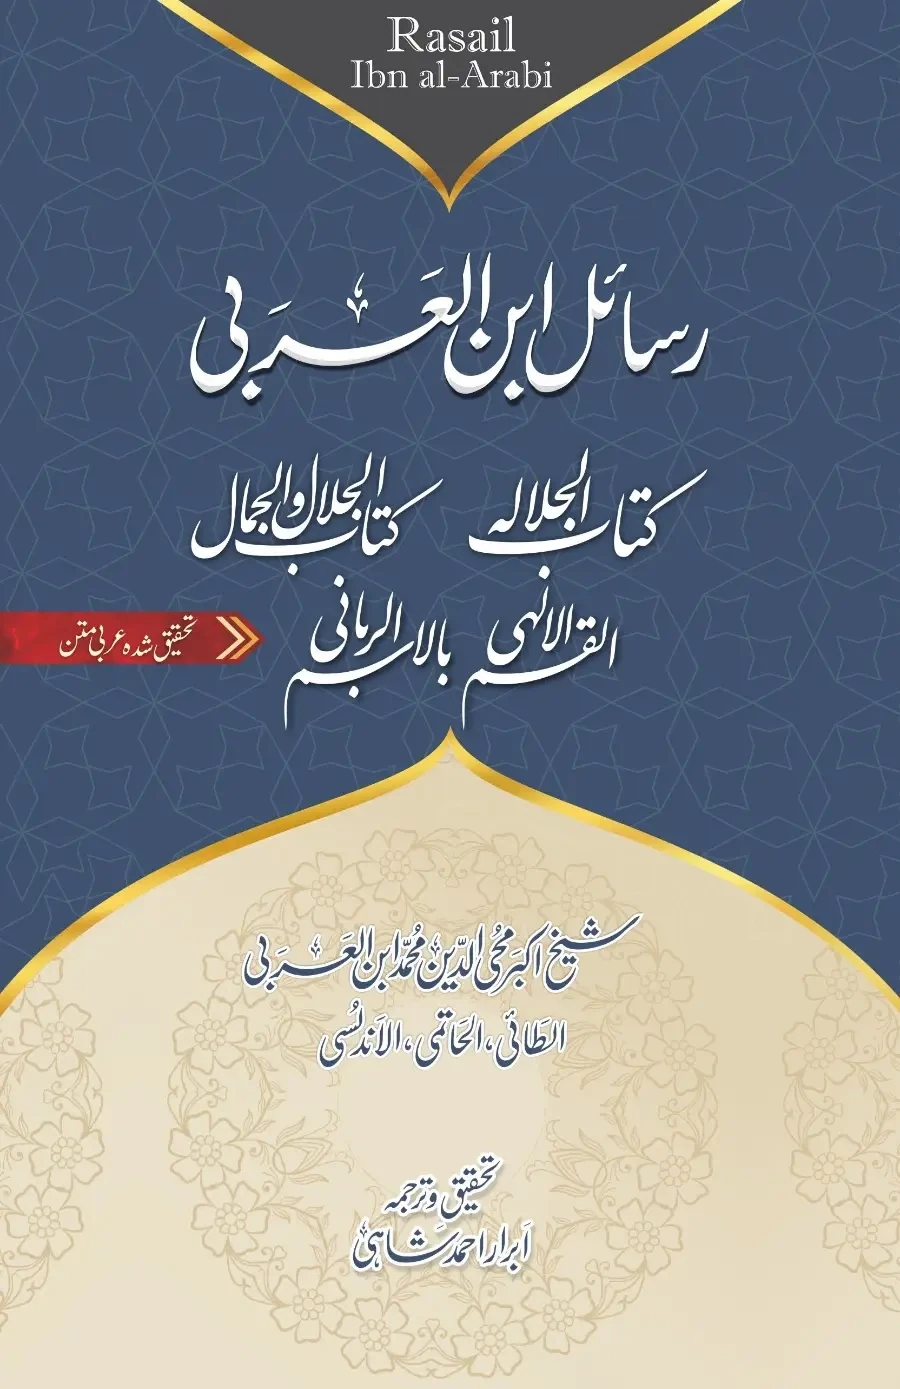 رسائل ابن العربي | کتاب الجلالہ | کتاب الجلال والجمال | کتاب القسم الالہی | عربی + اردو